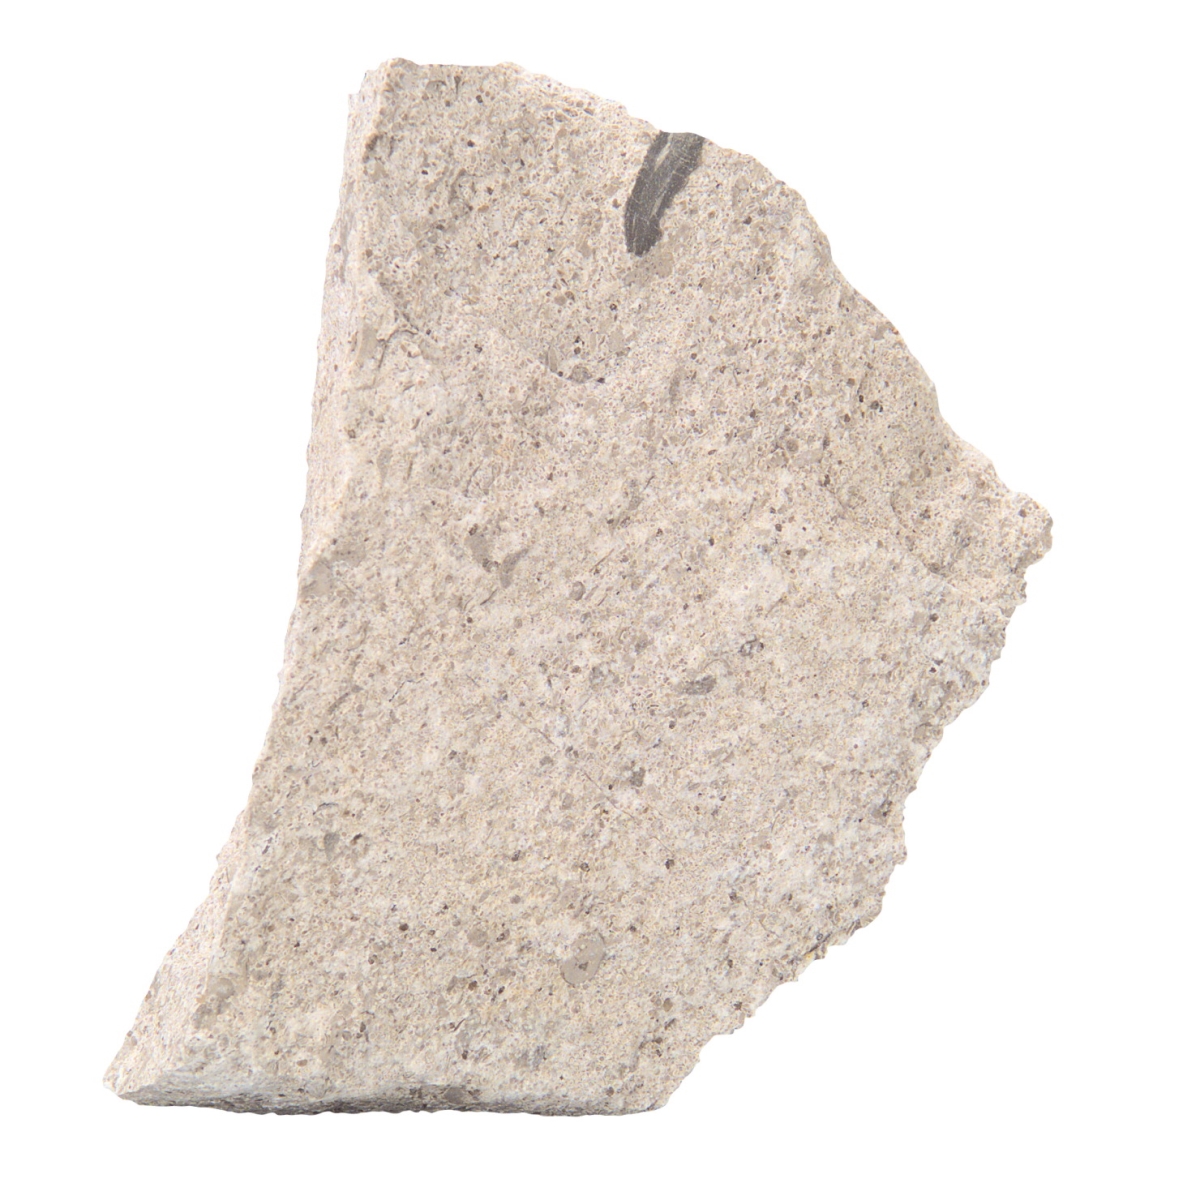 586618 Hand Sample Granular Oolitic Limestone